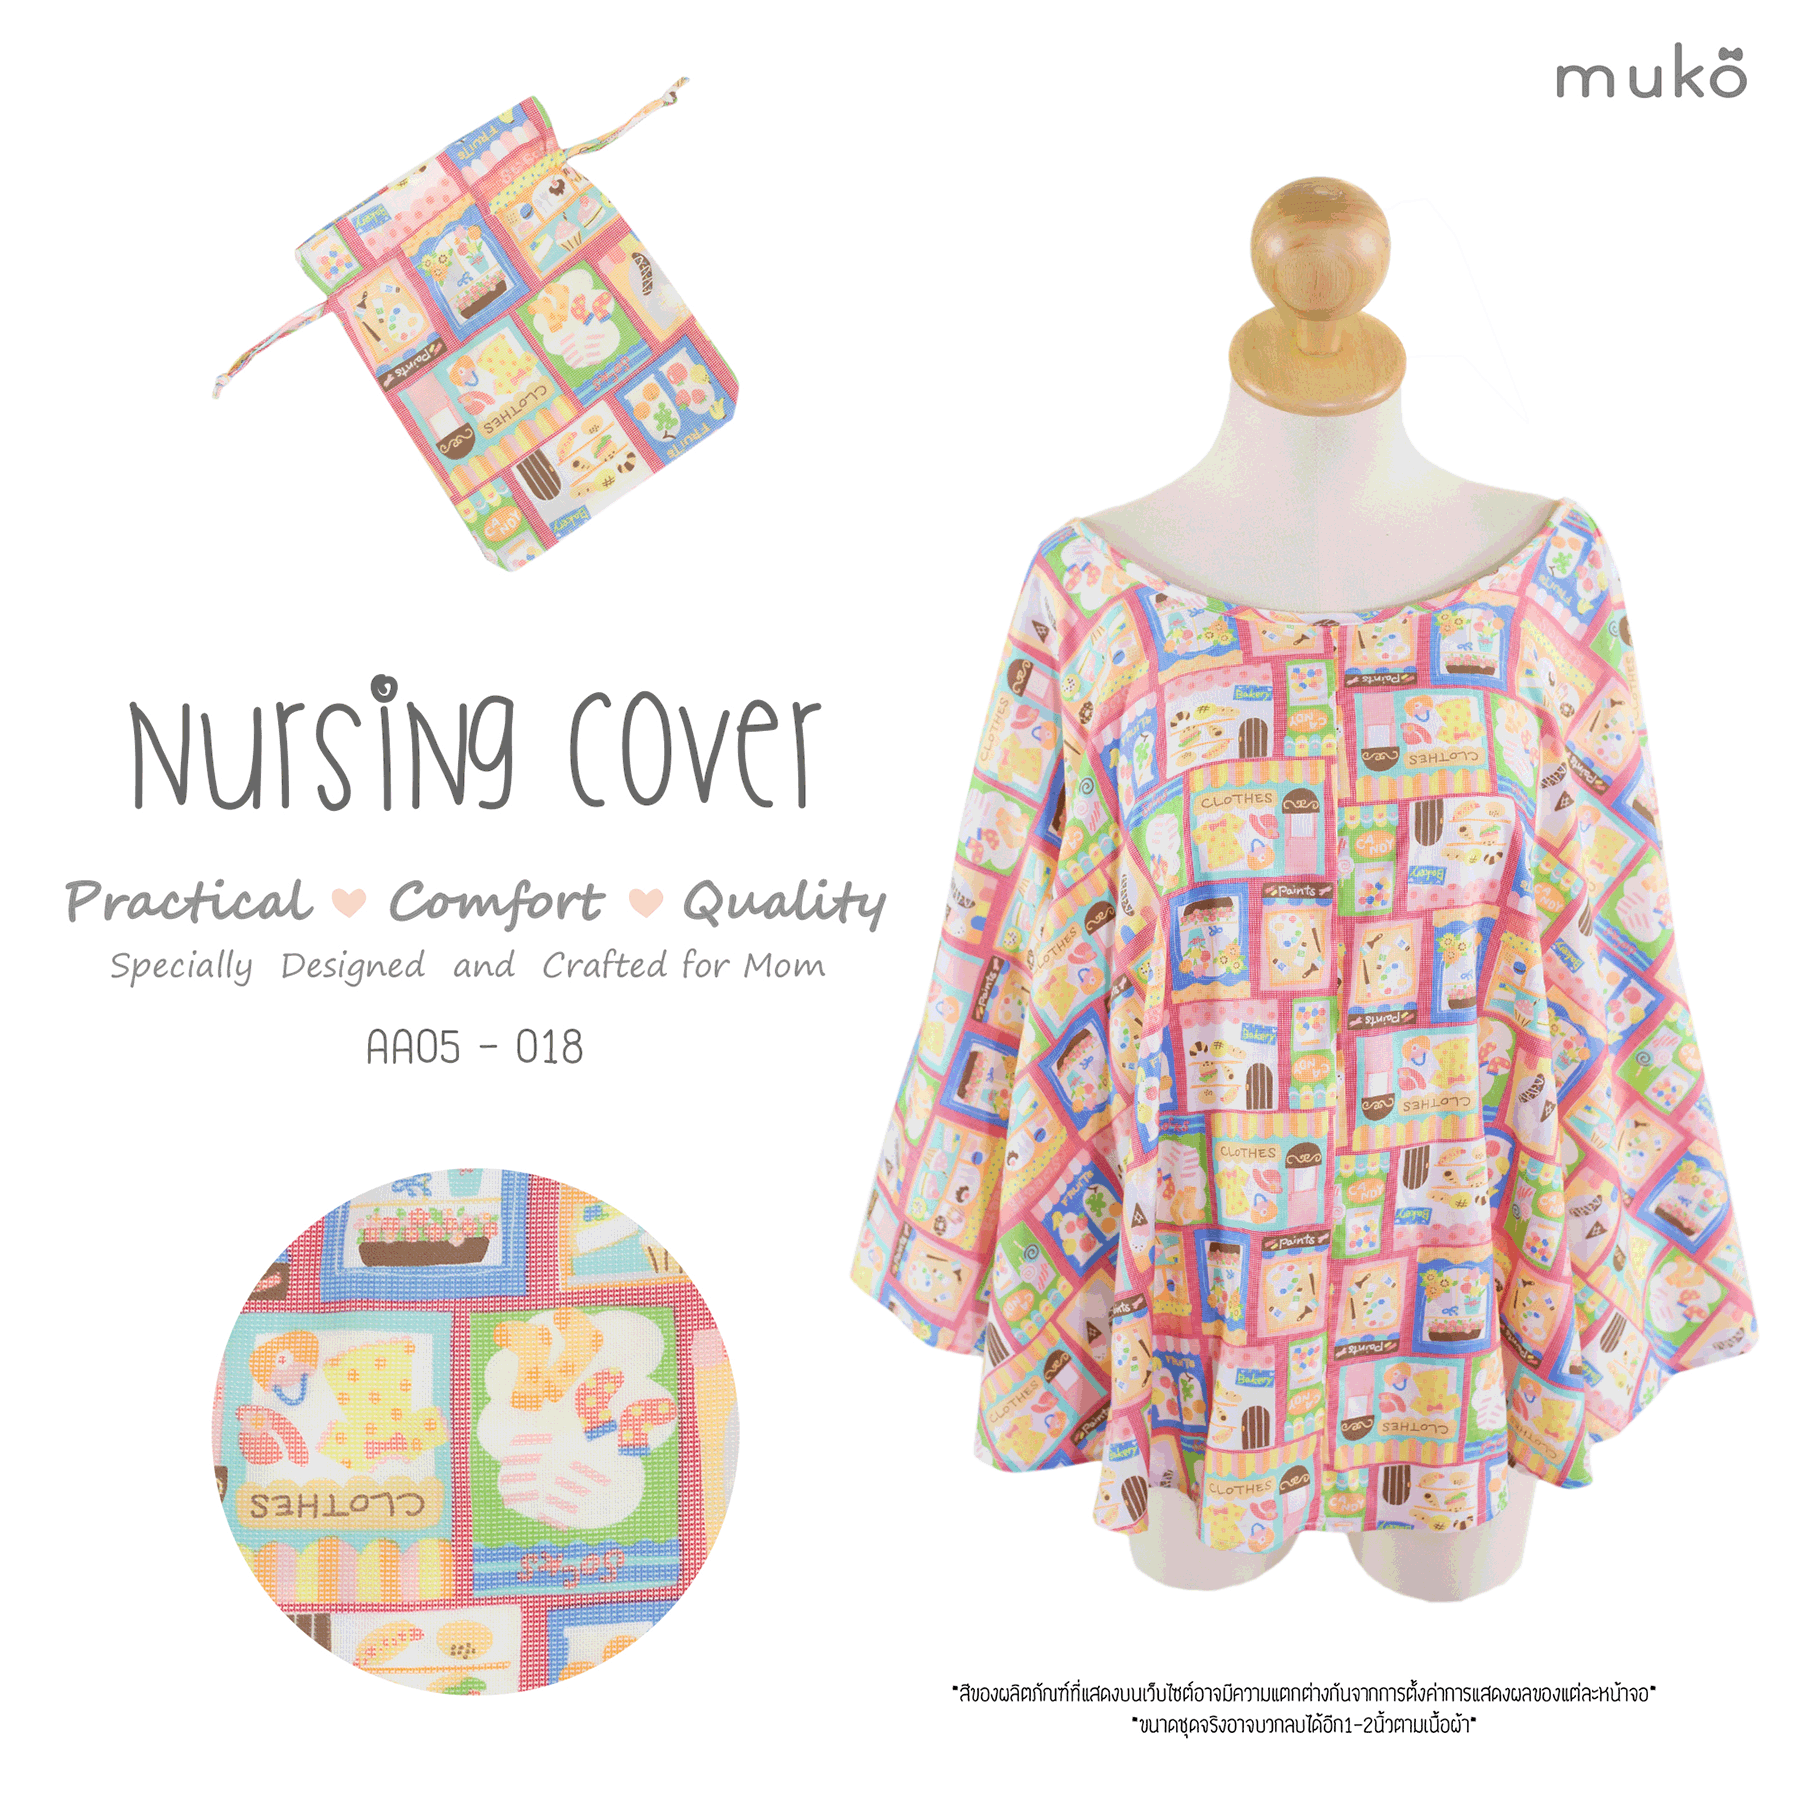 Muko Nursing Cover ผ้าคลุมให้นมลูก  AA05-018 ลายไอศครีม